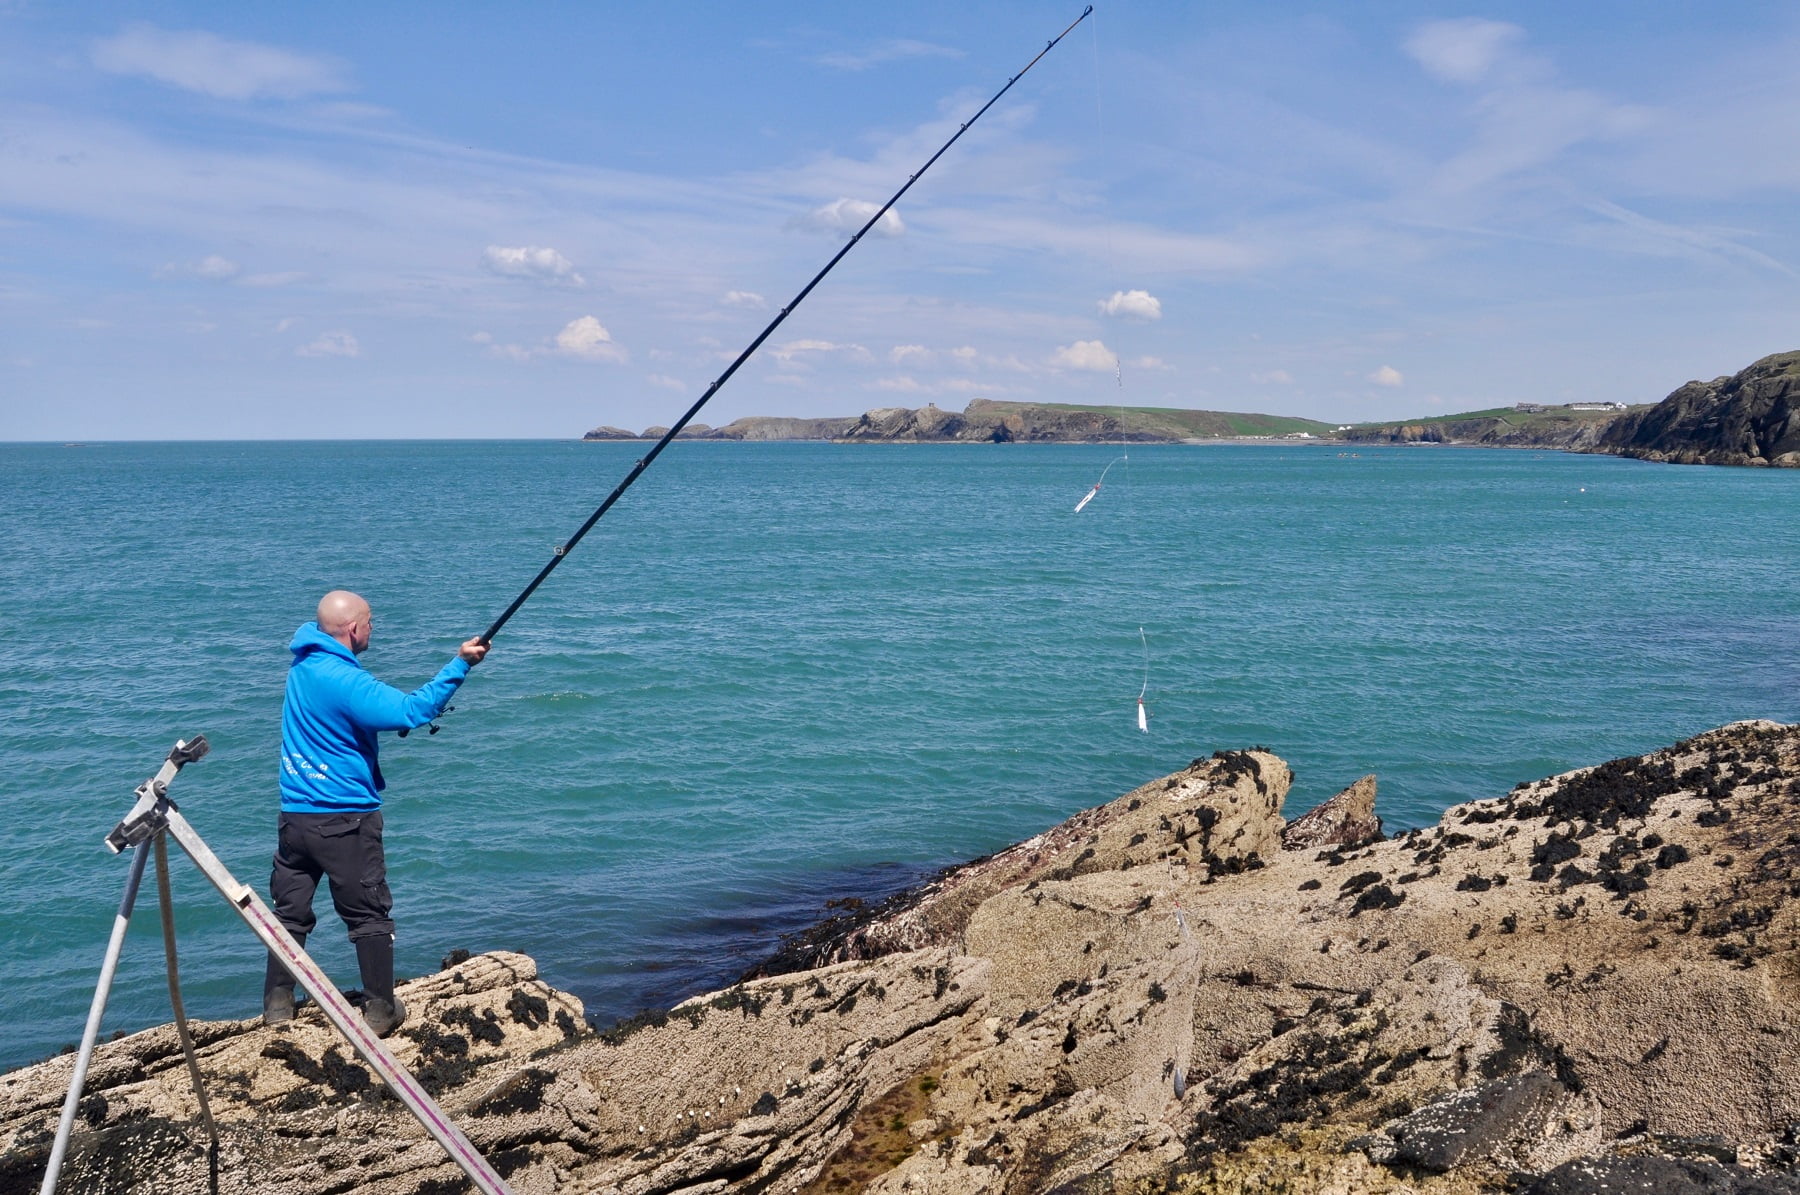 Beginners guide to shore fishing - Fishing in Wales